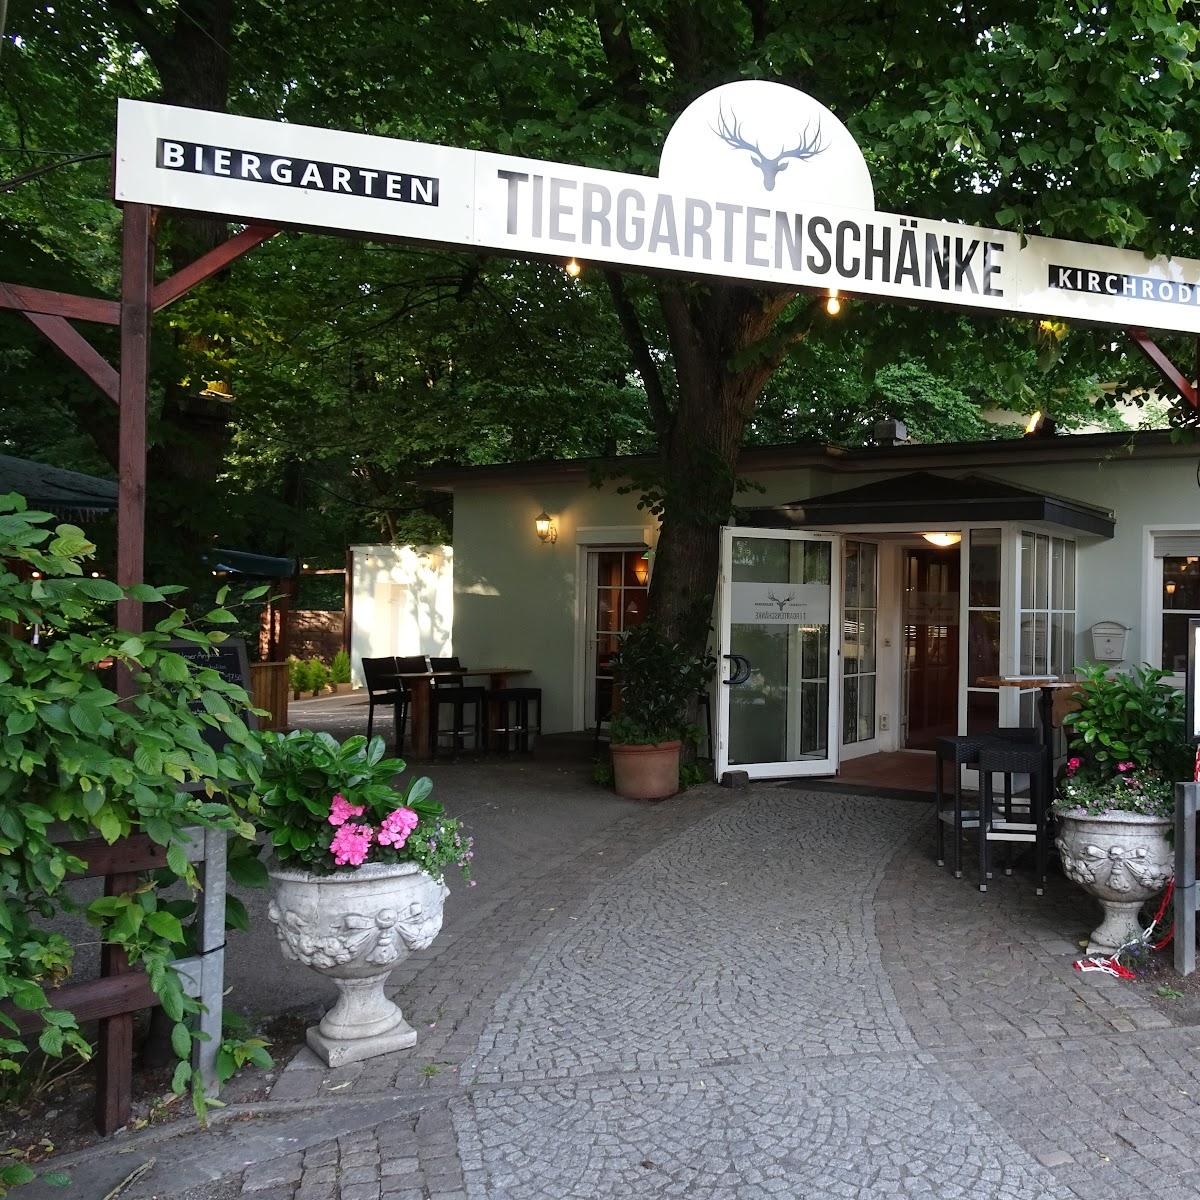 Restaurant "Tiergartenschänke" in Hannover